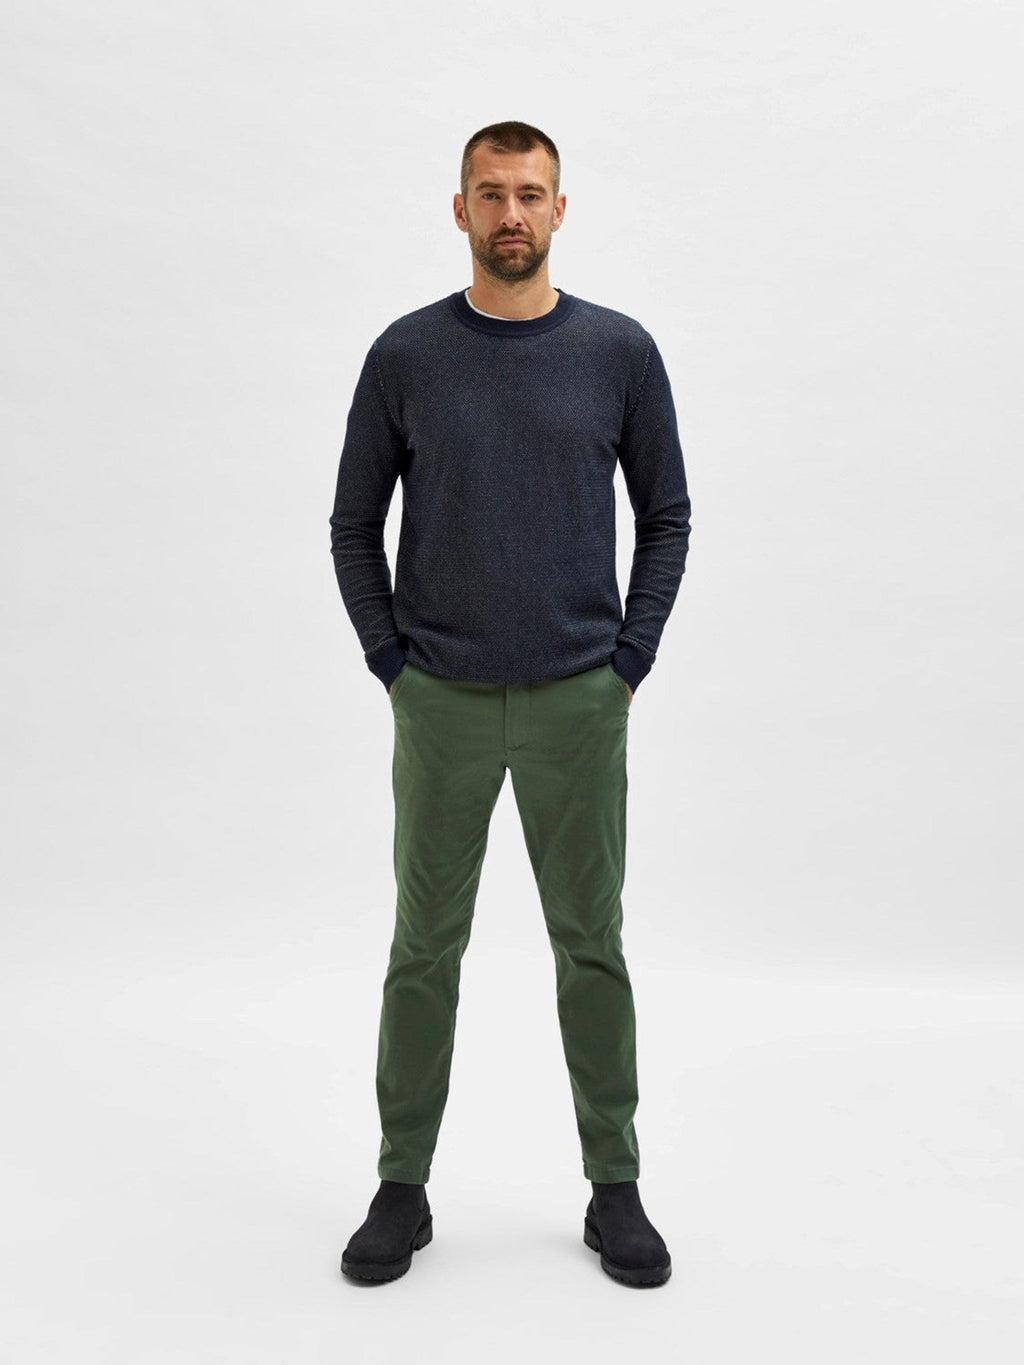 Pantalon de chino flexible Miles - Bronze Green (coton biologique)